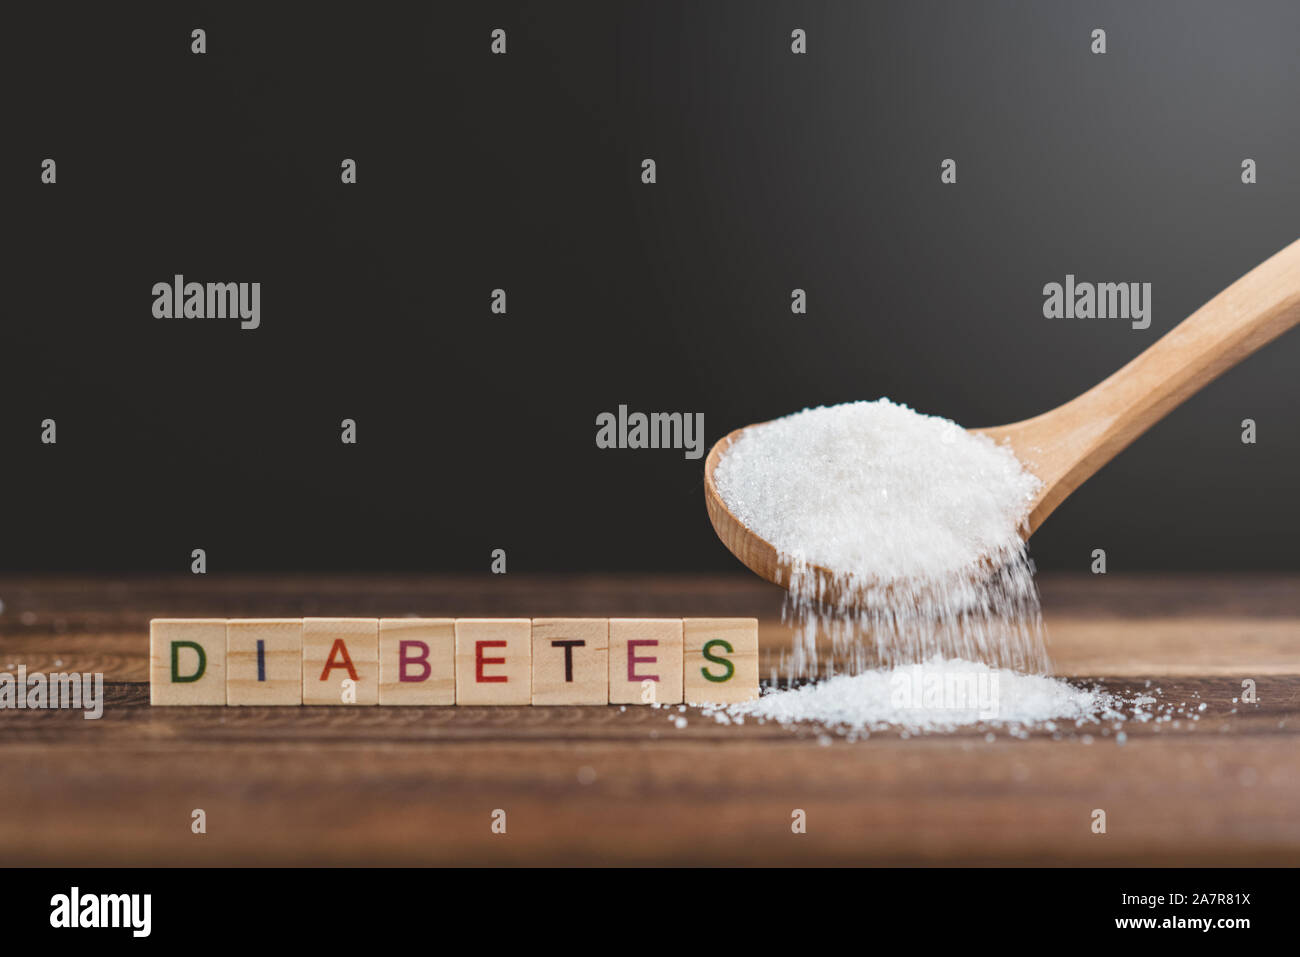 Zucker gegossen auf einem Holztisch mit Diabetes Wort. Konzept der Diabetes und ungesundes Essen. Stockfoto